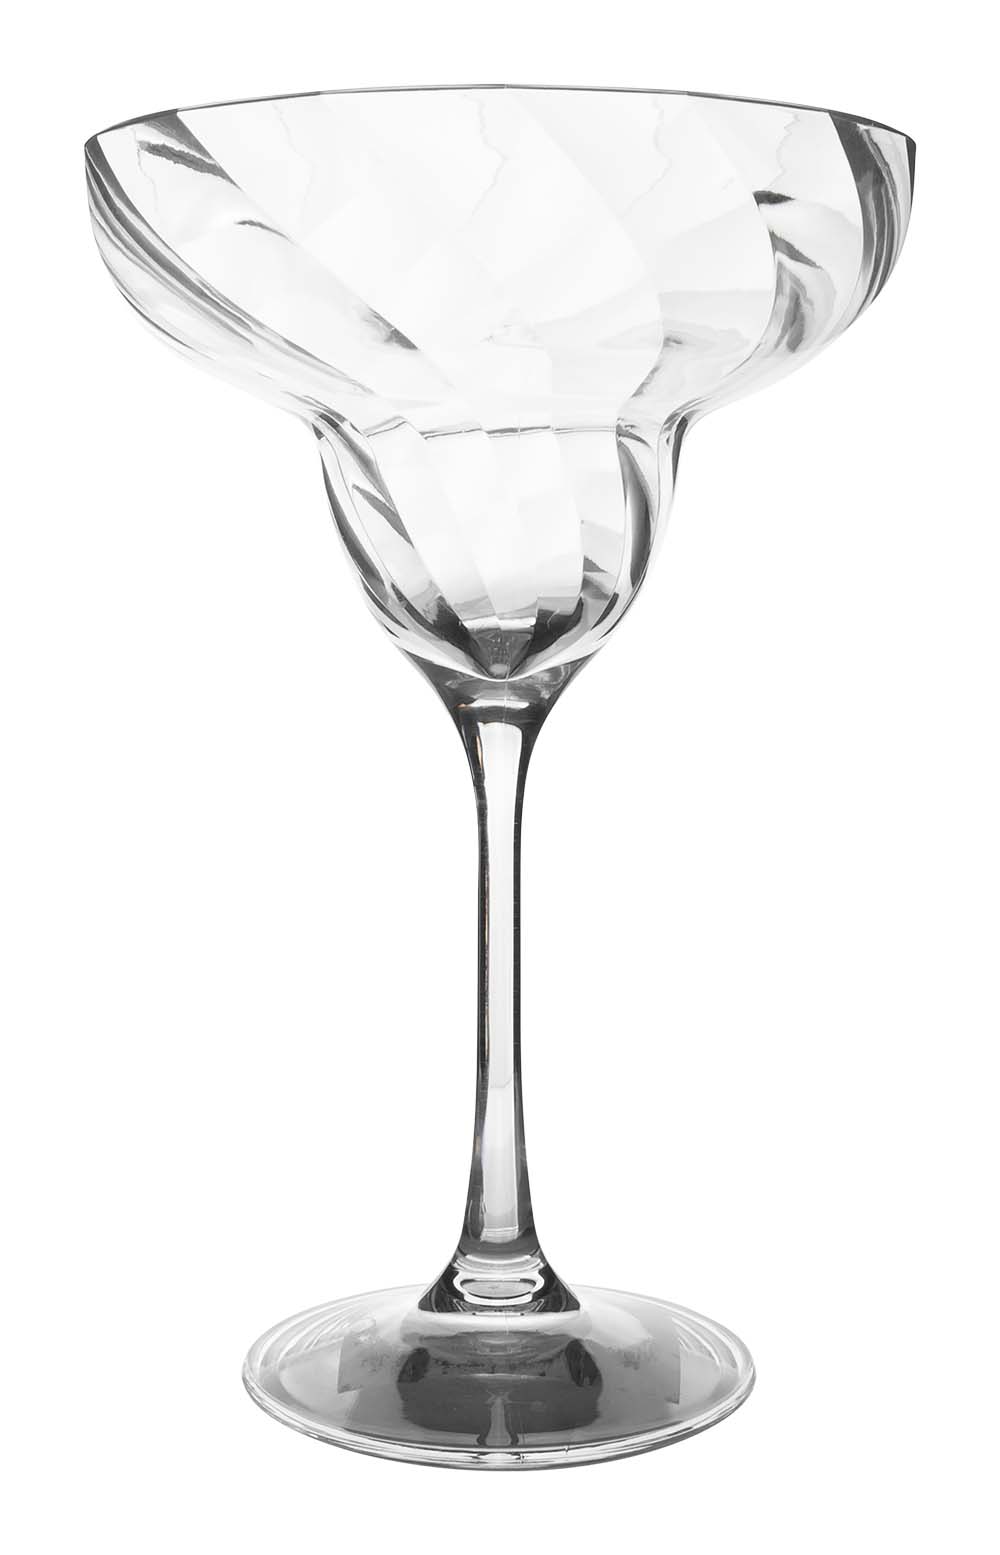 6911180 Een cocktailglas uit de Royal line collectie. Dankzij het speelse effect kan deze gemakkelijk gecombineerd worden met andere producten uit de Royal line. Vrijwel onbreekbaar door hoogwaardig MS materiaal. Bestaat uit een set van 2 stuks. Zeer gemakkelijk te reinigen en langdurig te gebruiken, wat het glas erg duurzaam maakt. Daarnaast is het waterglas erg lichtgewicht, krasbestendig en BPA vrij. Inhoud: 350 ml.